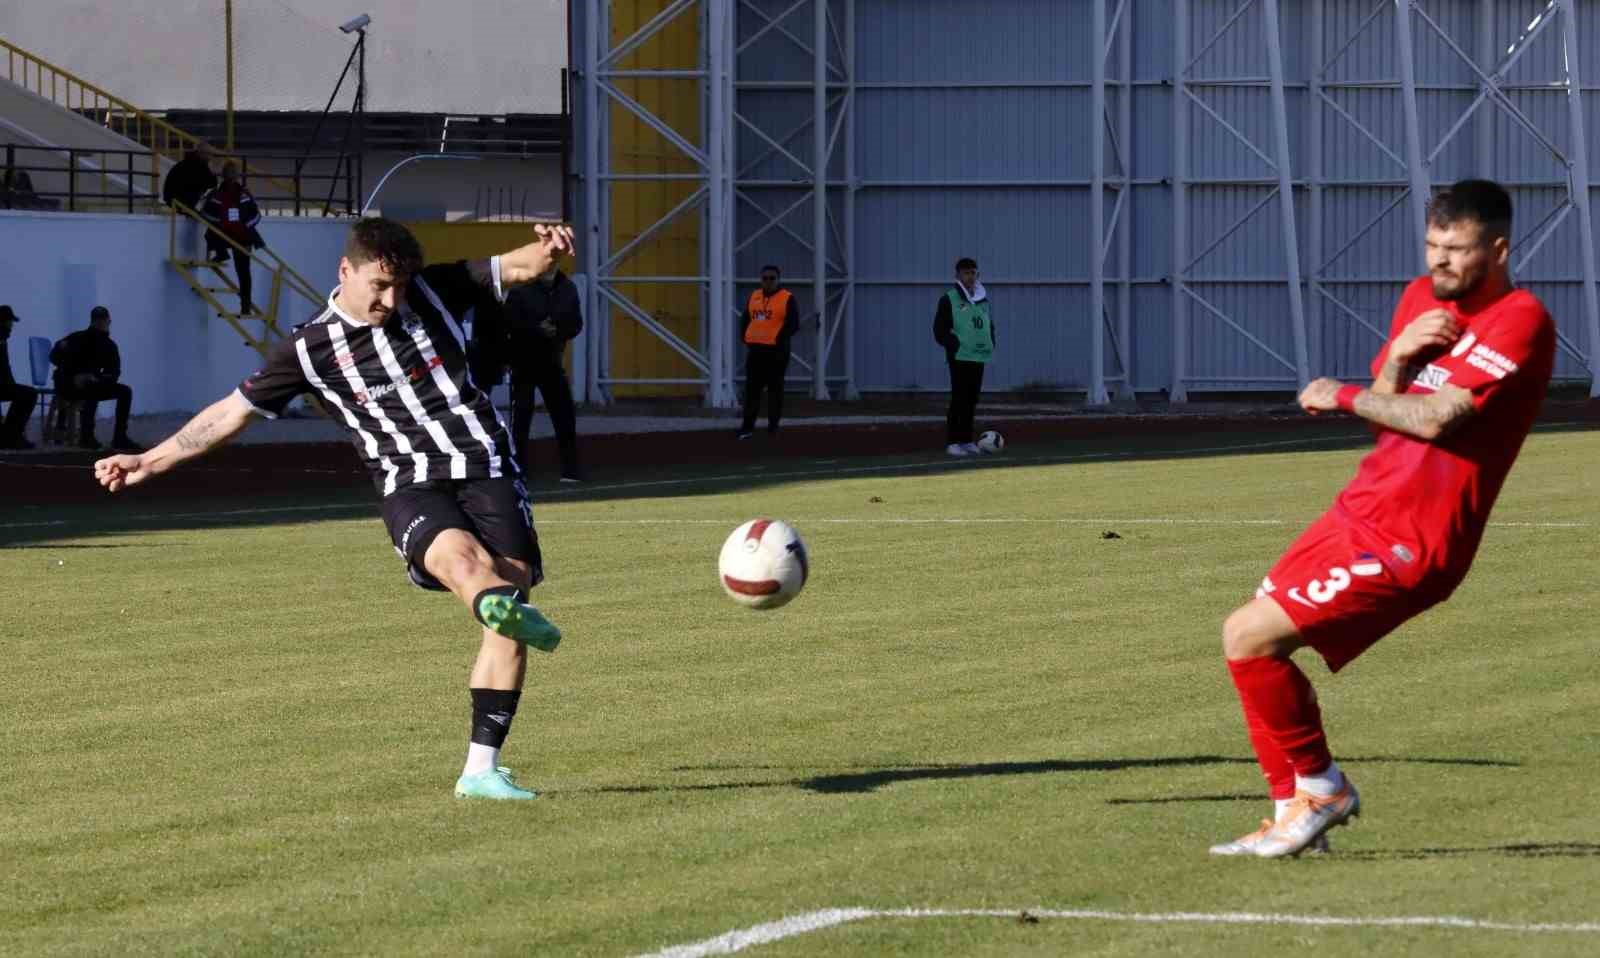 TFF 2. Lig: 68 Aksaray Belediyespor: 0 - Düzcespor: 0
